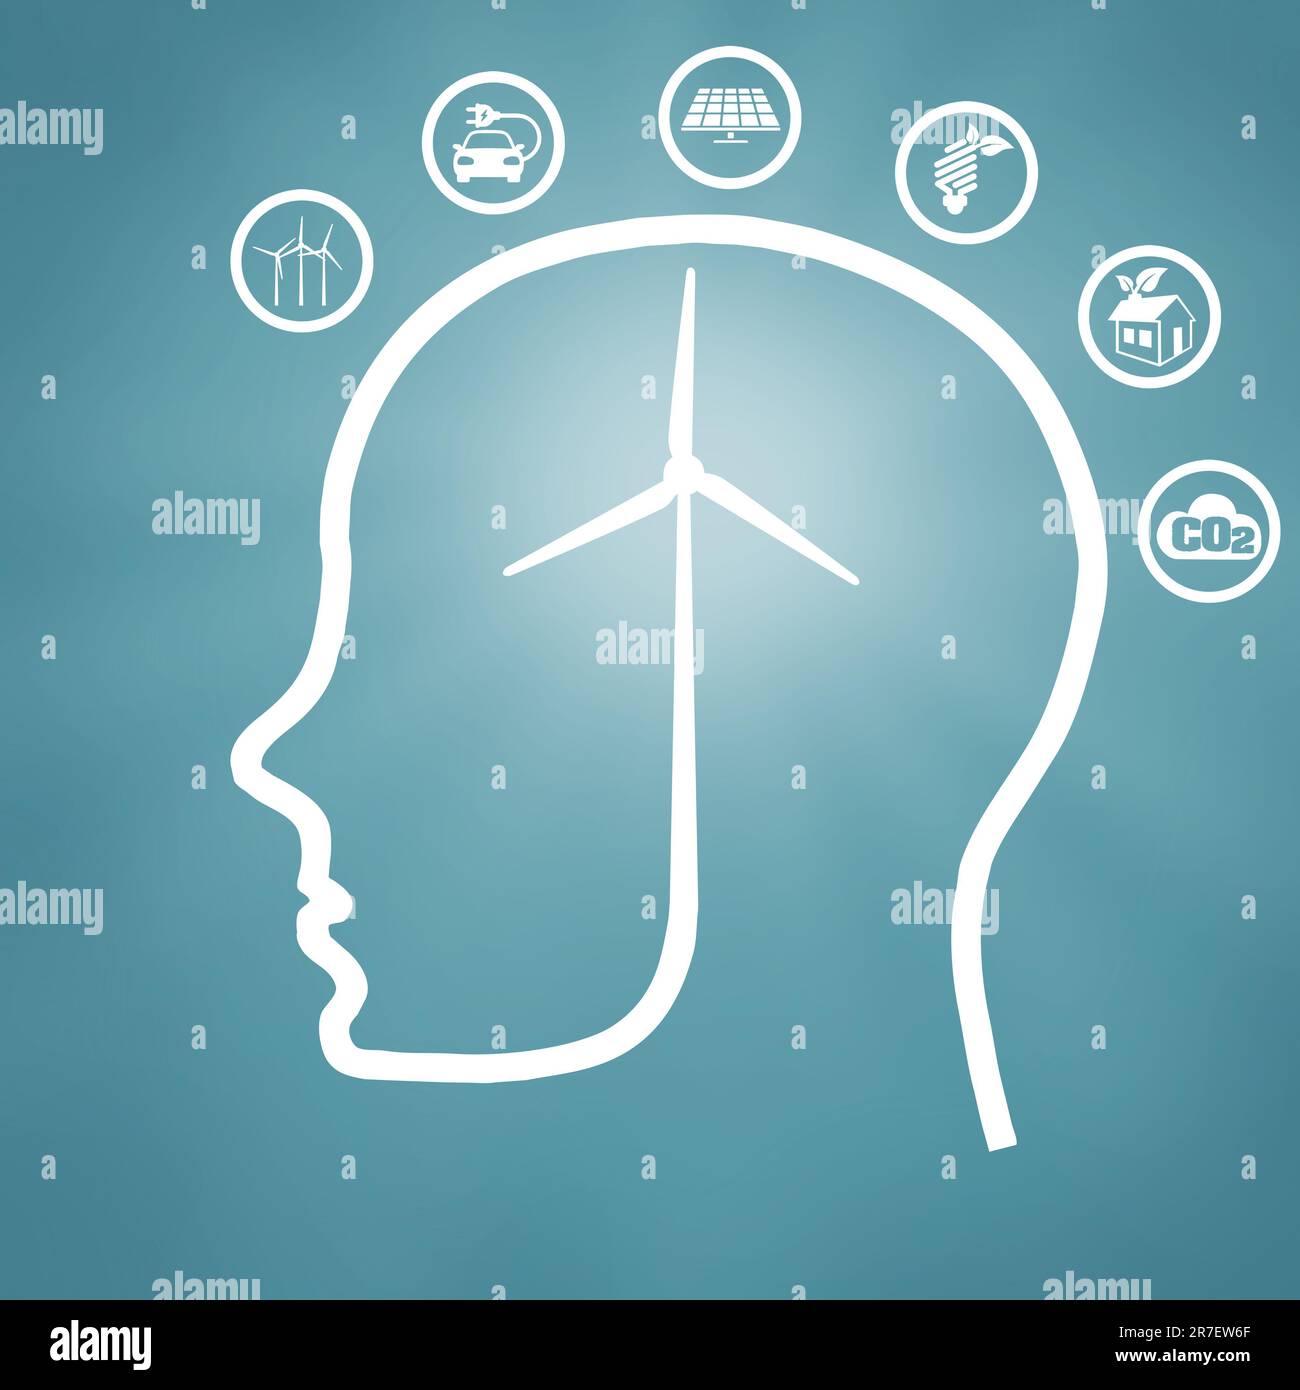 Illustrazione del profilo della testa umana con turbina eolica-cervello circondata da pittogrammi energetici sostenibili - concetto di consapevolezza ambientale Foto Stock